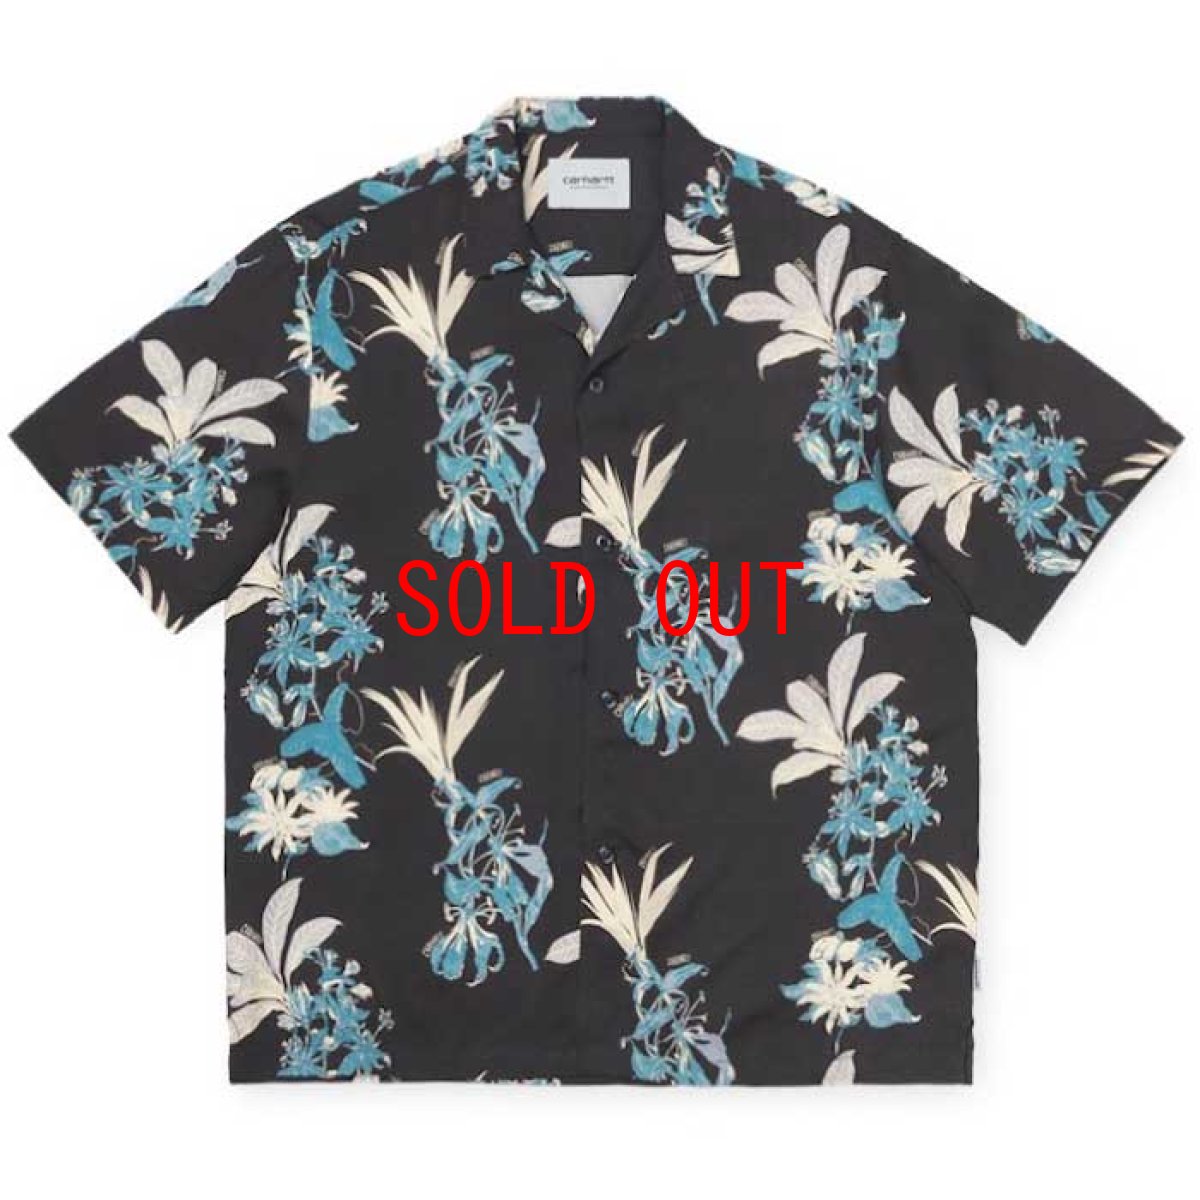 画像1: Hawaiian Floral S/S Shirt 半袖 ハワイアン 柄 シャツ (1)